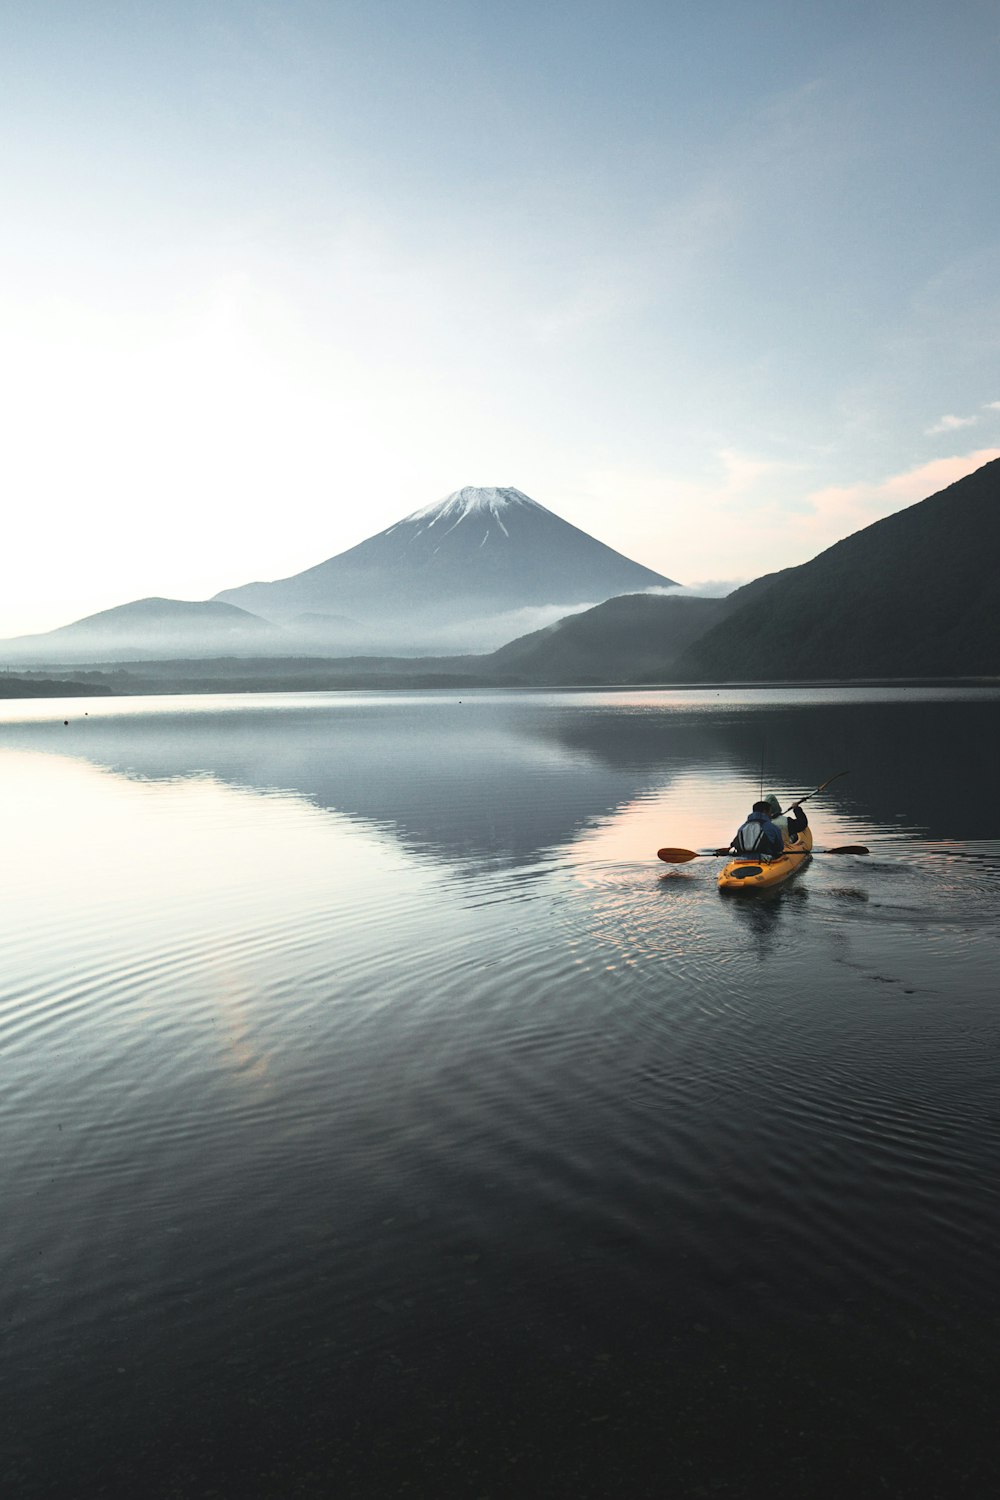 yellow kayak on calm water near mountain during daytime